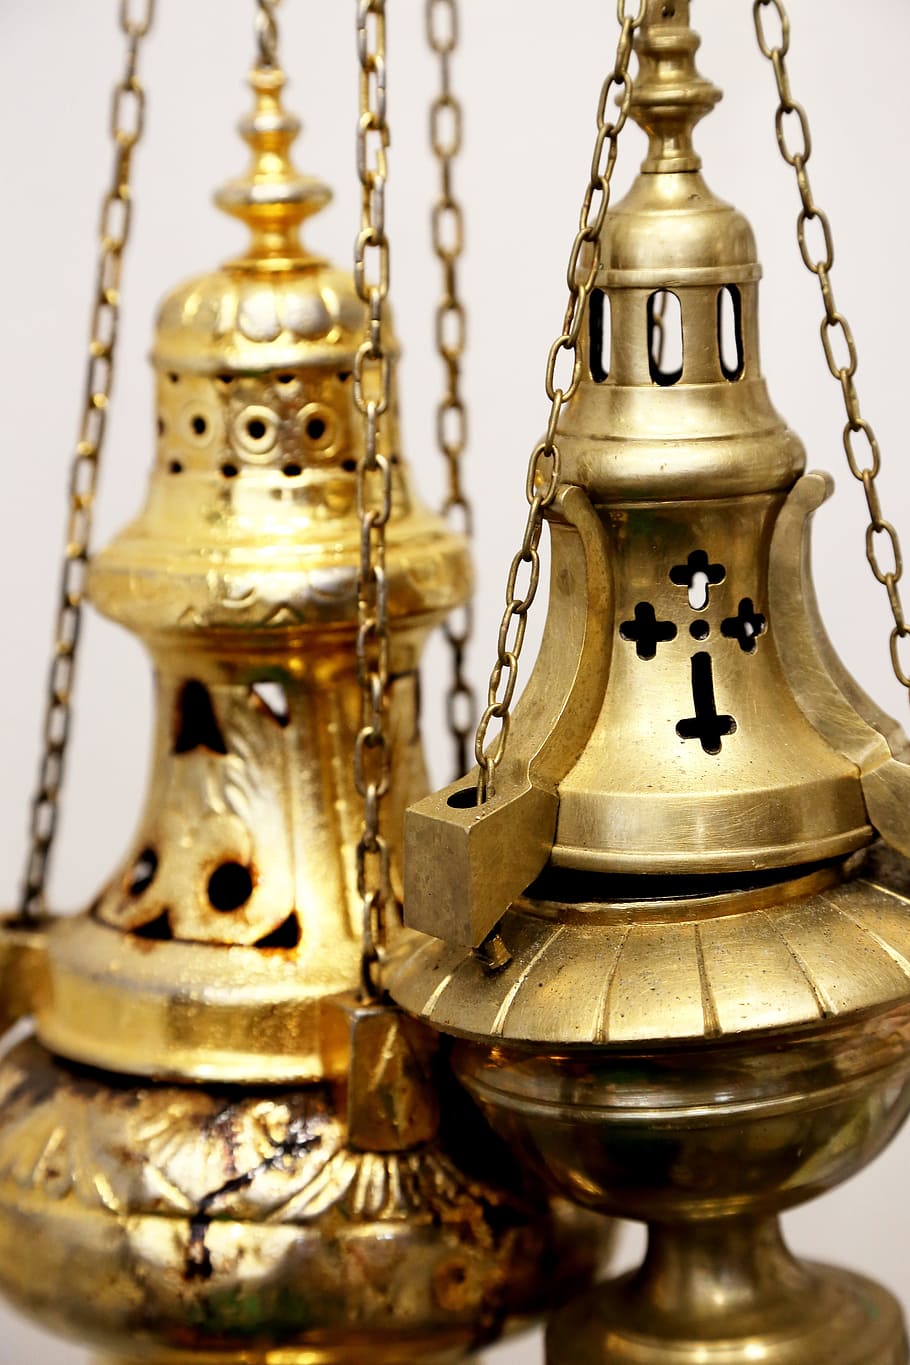 dos, frascos de incienso de color bronce, incienso, misa, iglesia, religión, fuego, armonía, dios, oro